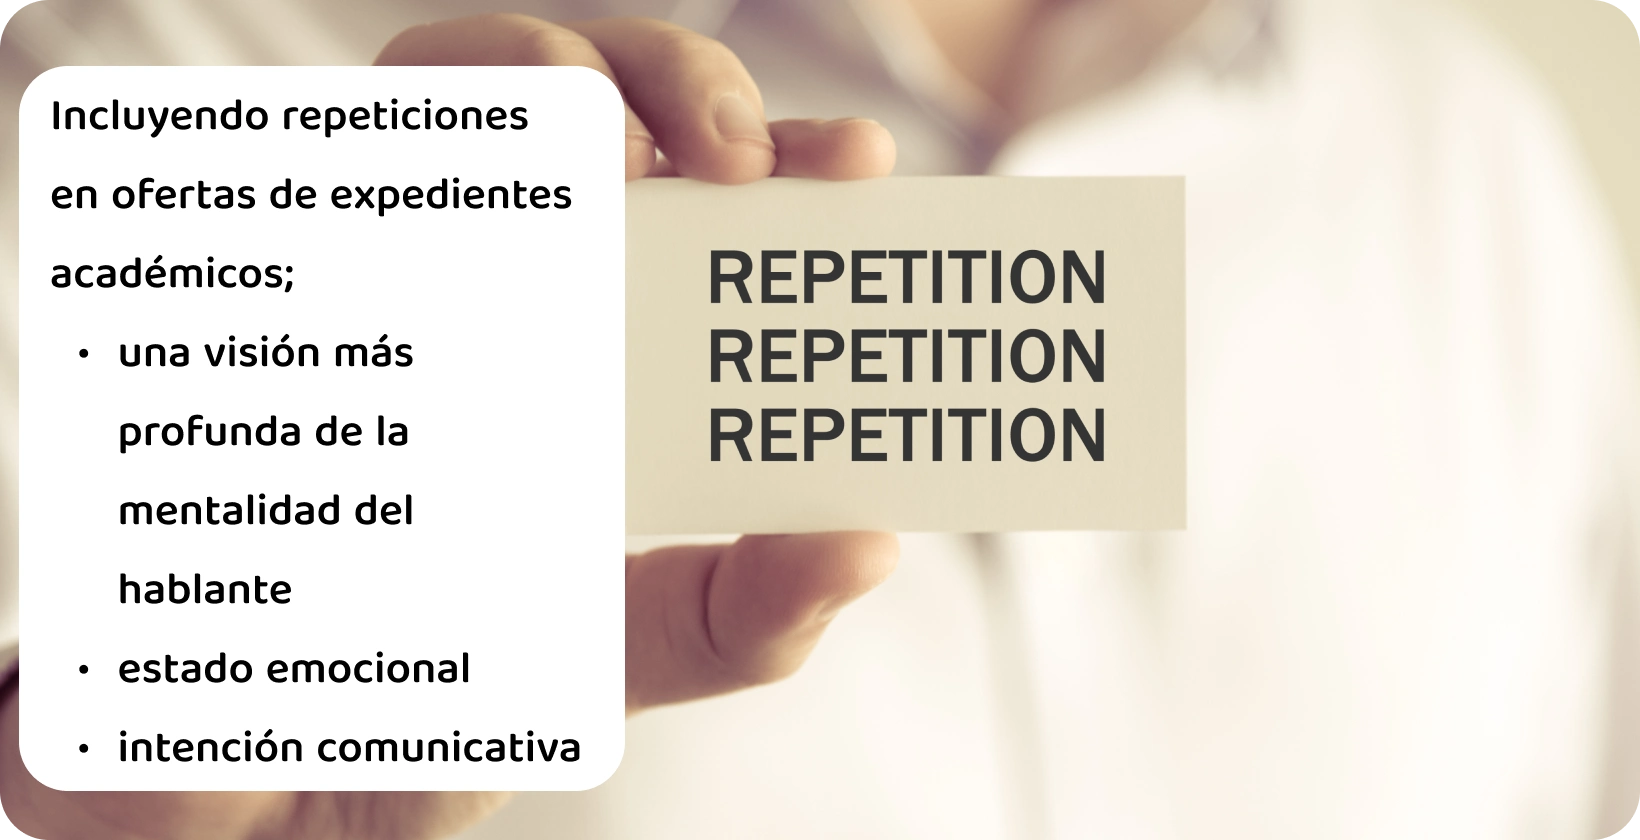 Un primer plano de una mano sosteniendo una tarjeta con la palabra 'Repetición', que ilustra el concepto de repeticiones en una transcripción verbatim.